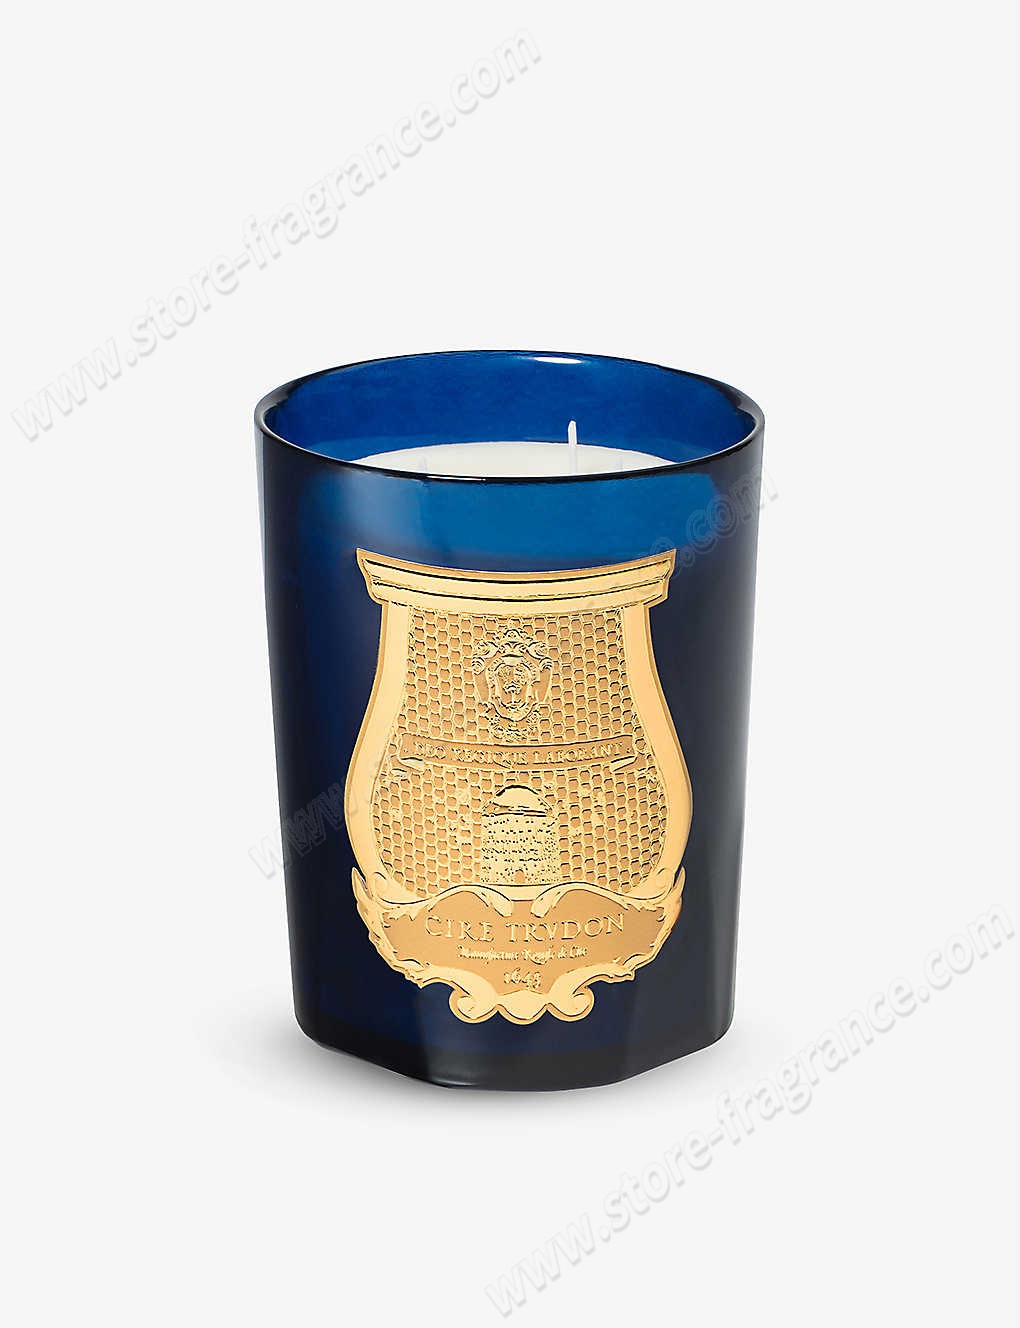 CIRE TRUDON/Reggio scented candle 800g ✿ Discount Store - -0